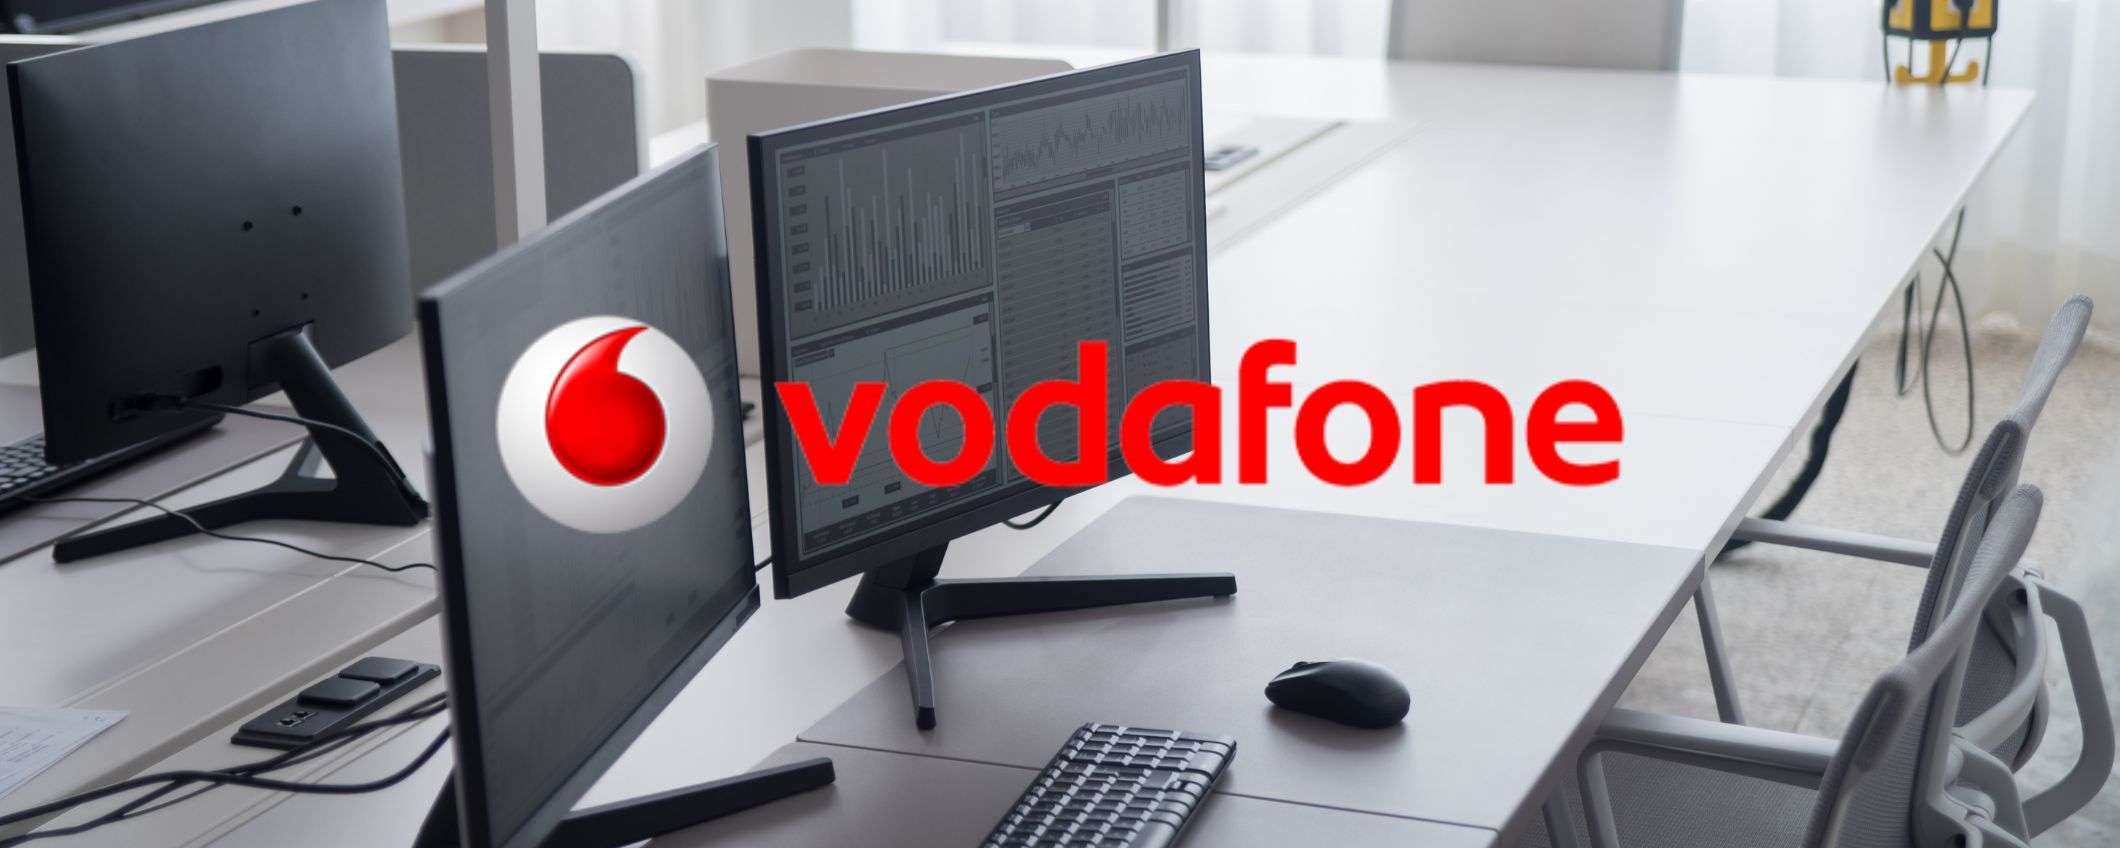 Vodafone, naviga alla massima velocità senza limiti a 24,90€